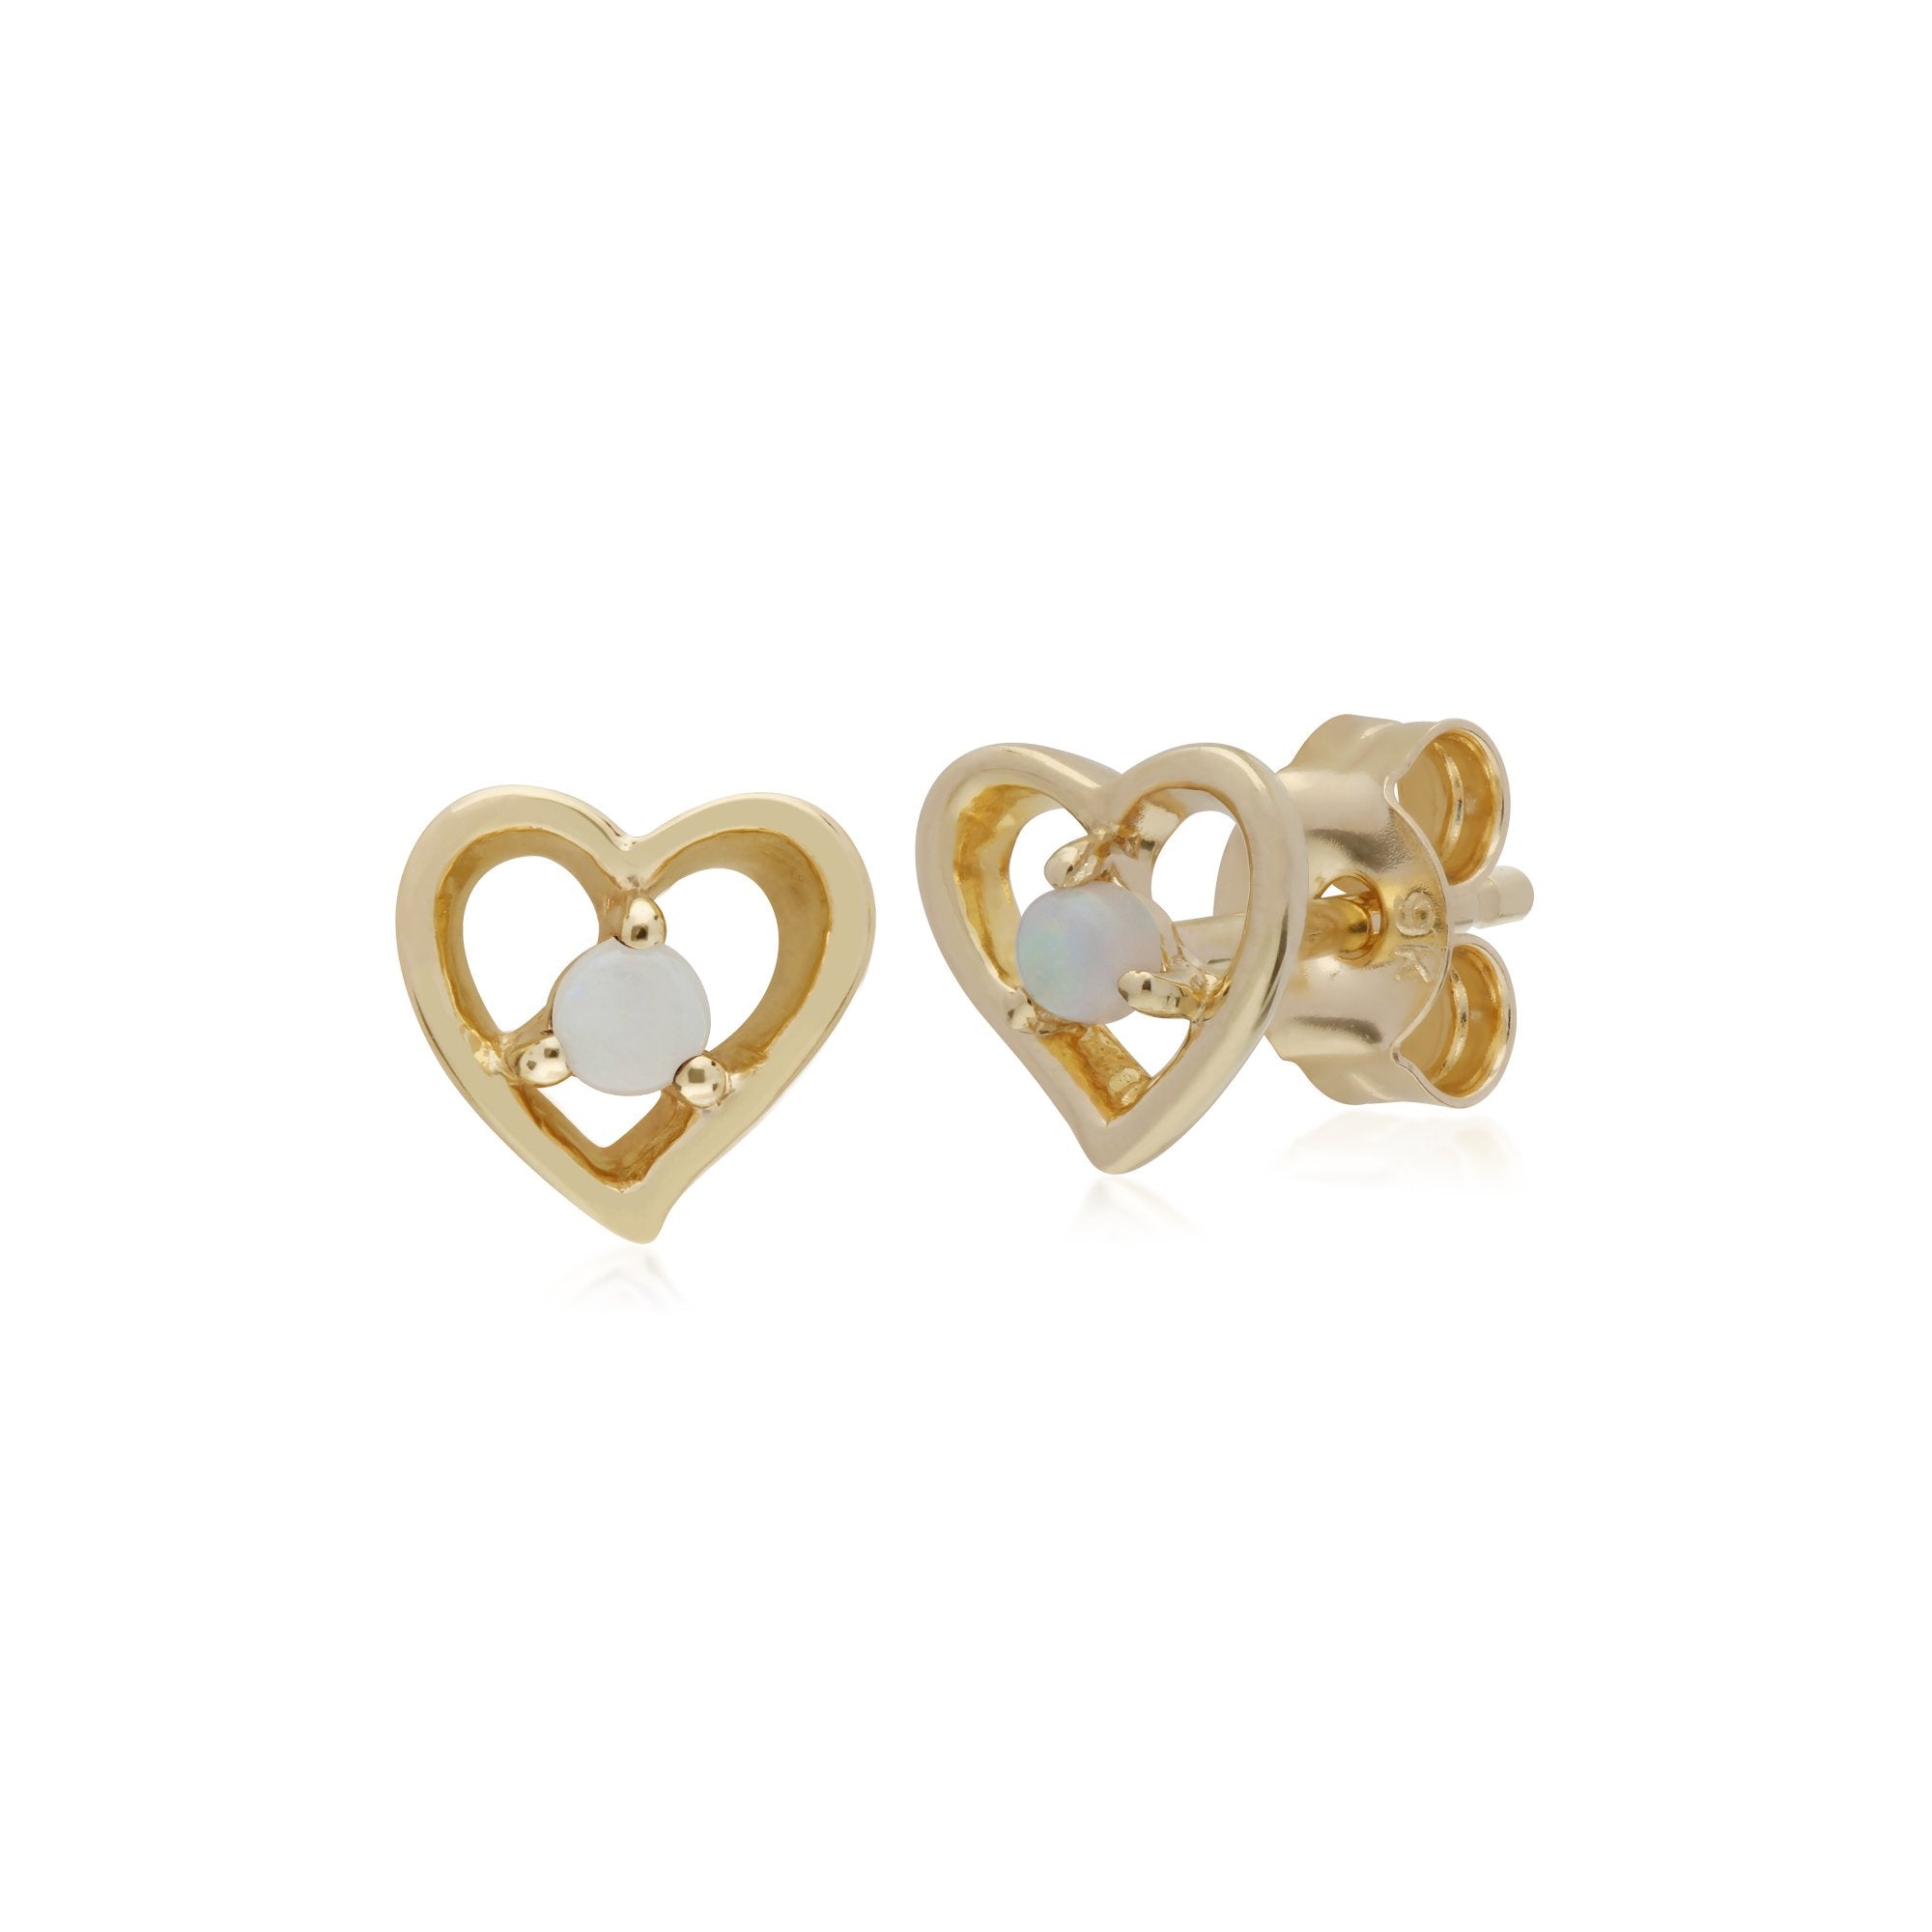 Gemondo 9ct Yellow Gold Opal Single Stone Heart Stud Earrings